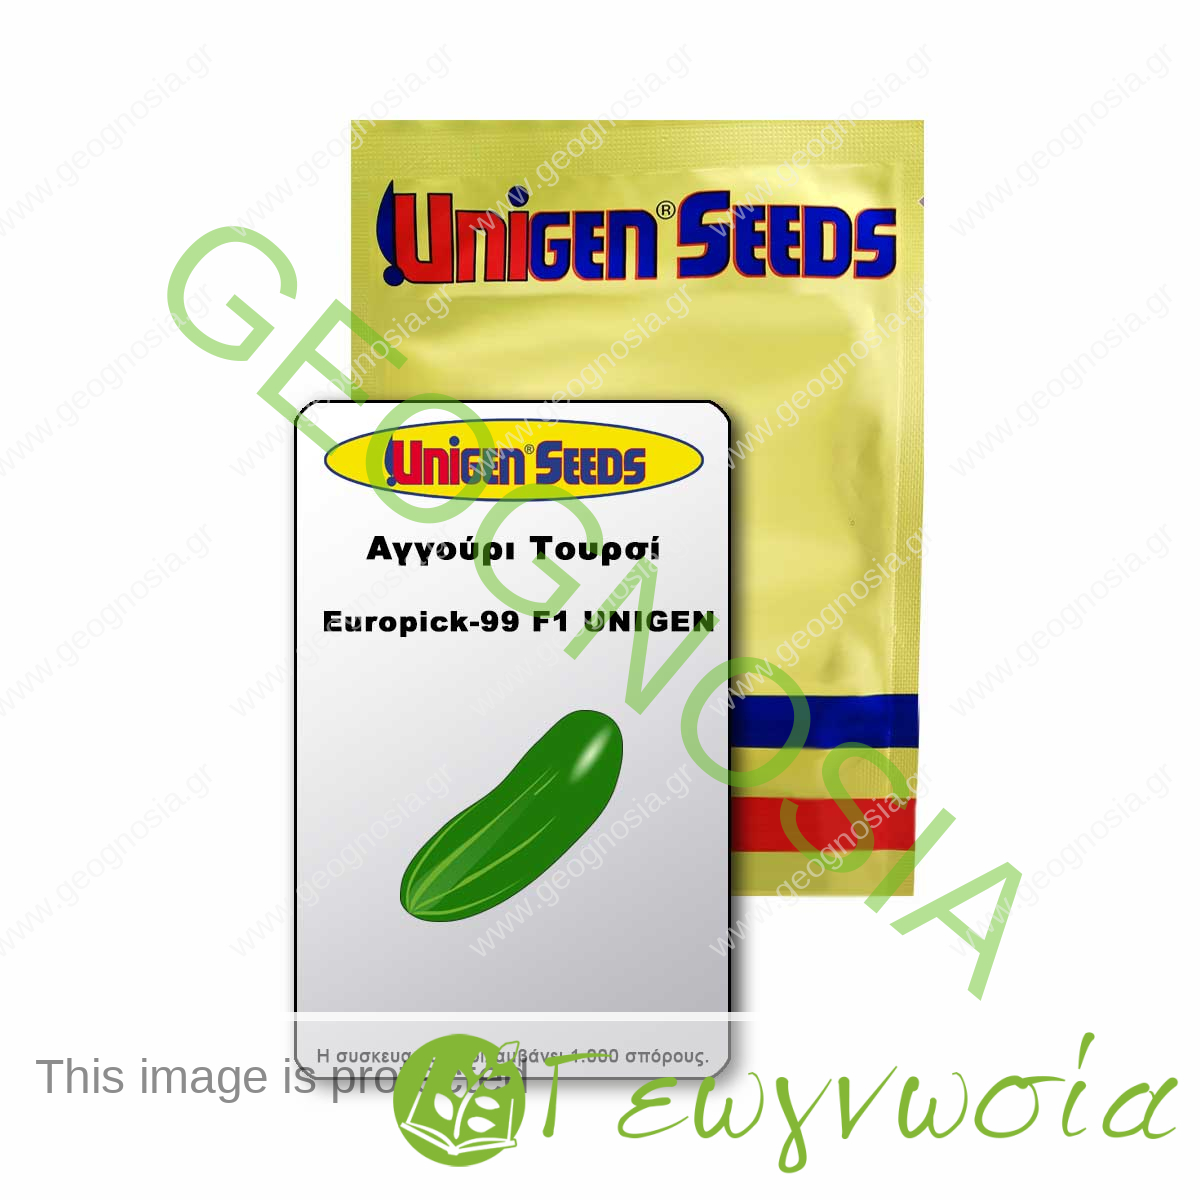 sporoi-aggoyri-toyrsi-europick-99-f1-unigen-seeds